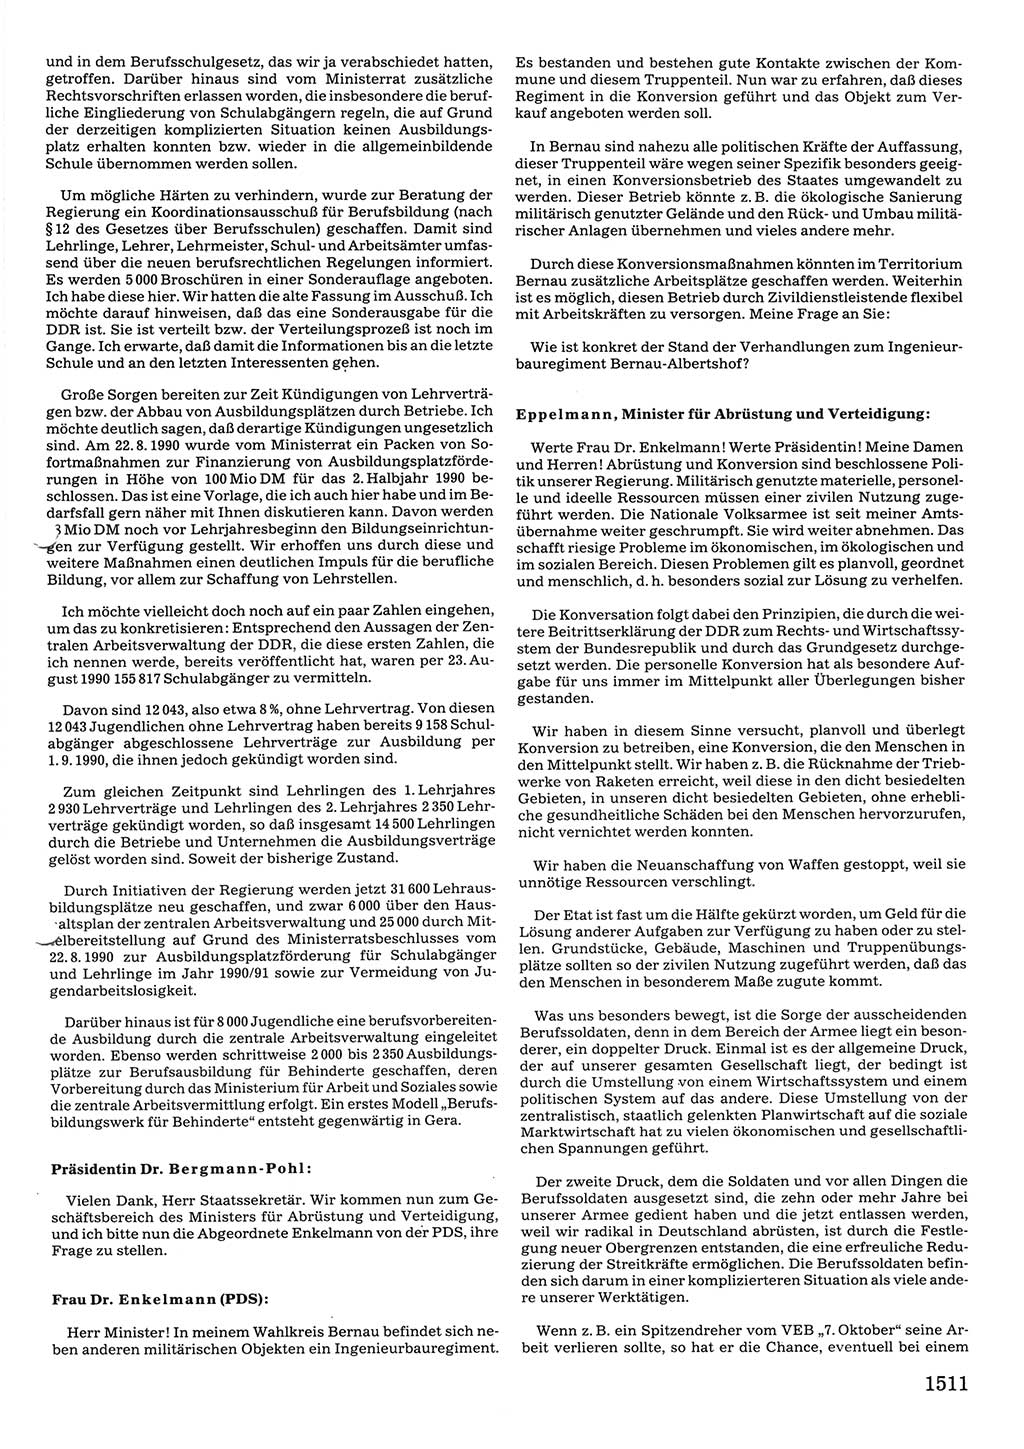 Tagungen der Volkskammer (VK) der Deutschen Demokratischen Republik (DDR), 10. Wahlperiode 1990, Seite 1511 (VK. DDR 10. WP. 1990, Prot. Tg. 1-38, 5.4.-2.10.1990, S. 1511)